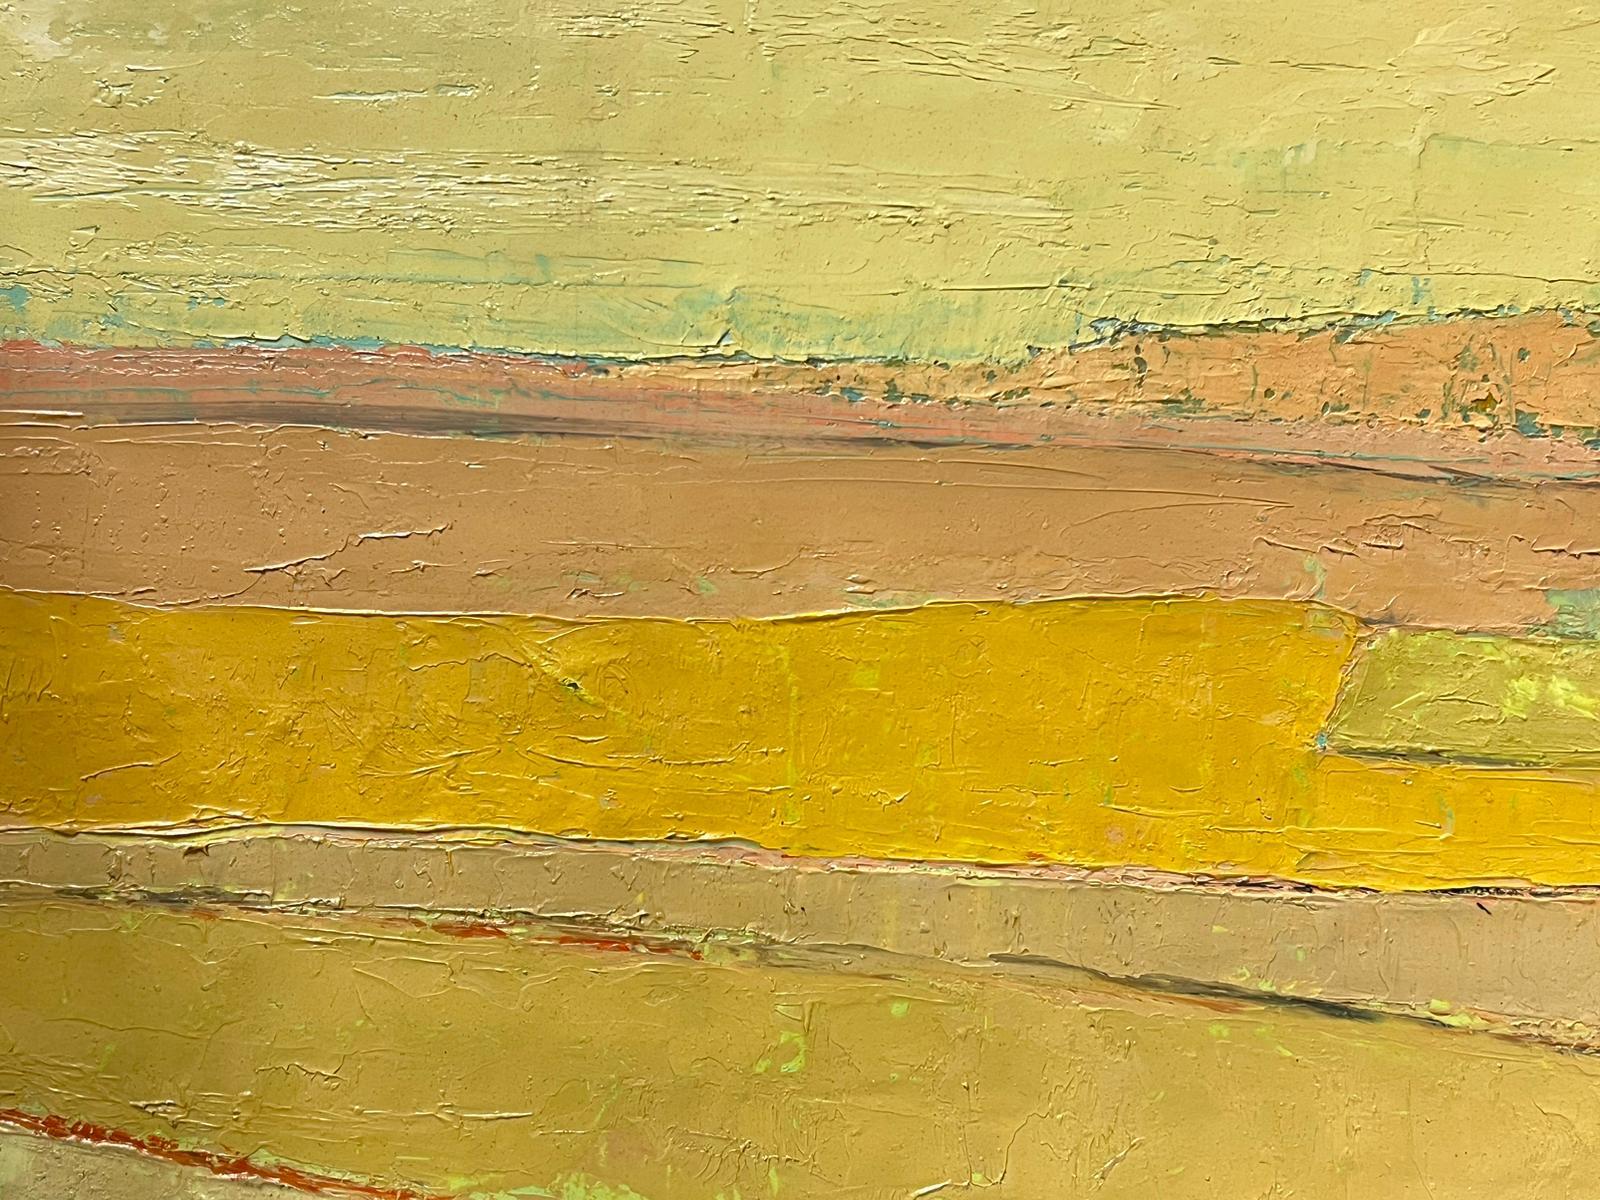 Französisch-modernistisches Ölgemälde des 20. Jahrhunderts, gelbes Landschaftsgemälde, kubistische Komposition – Painting von Lucien Gondret